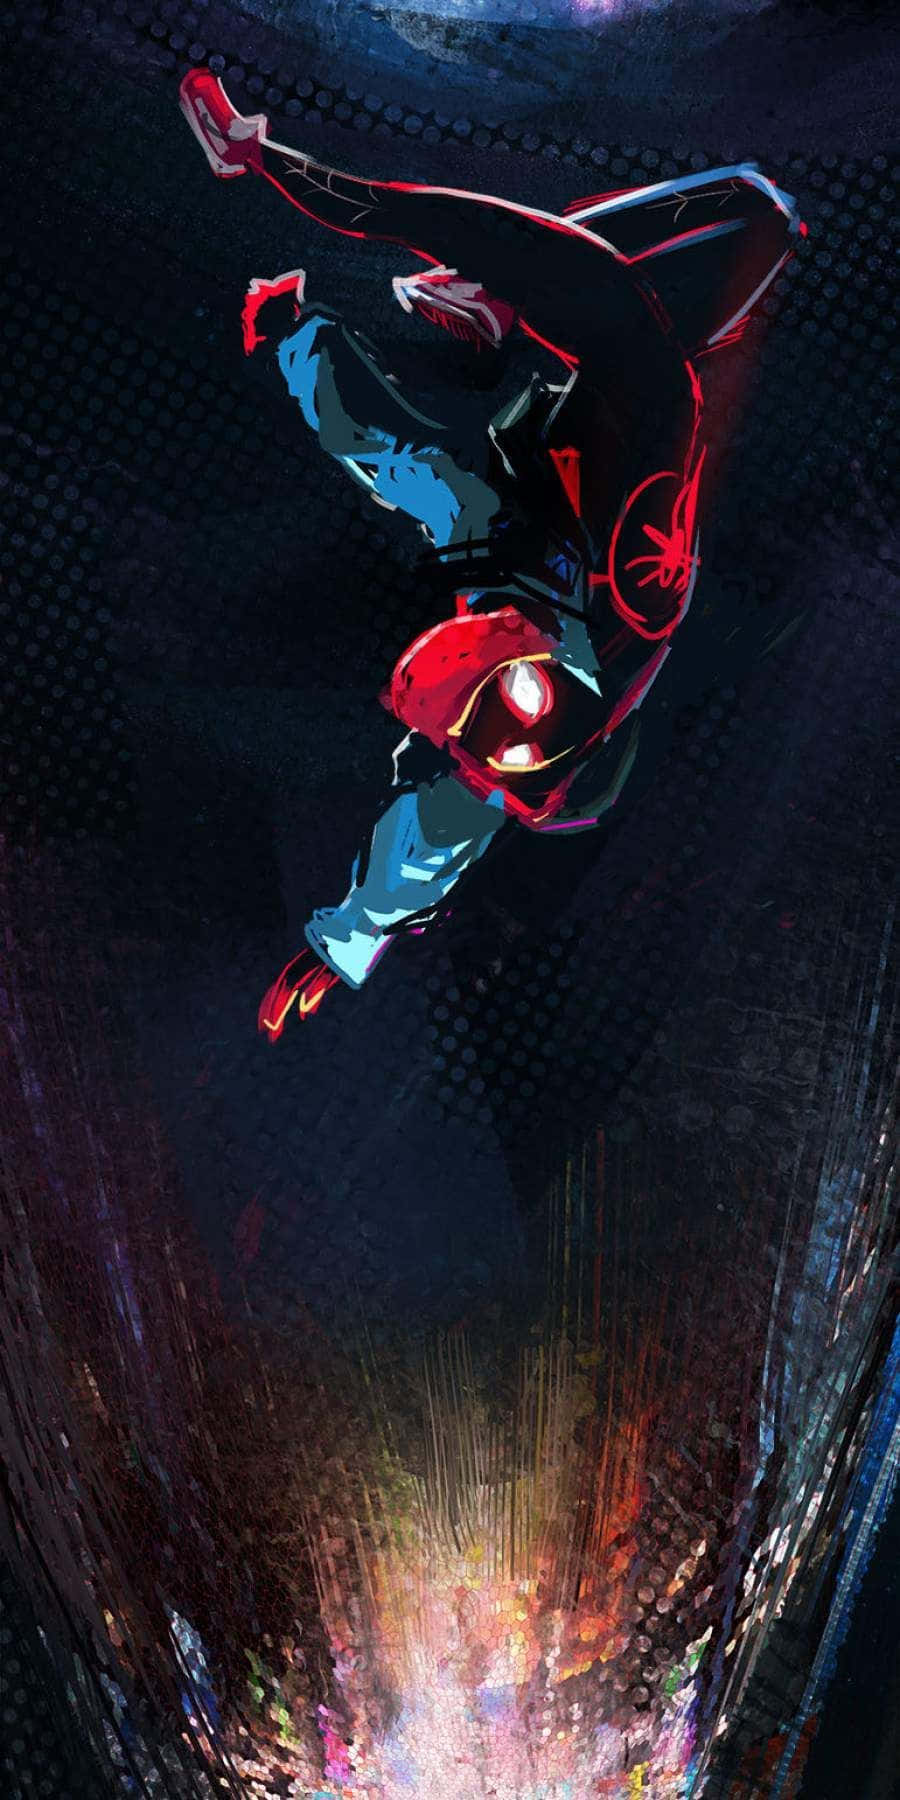 Wallpaperillustrationen Av Superhjälten Spider-man Miles Morales Är Ett Fantastiskt Val För Din Iphone-bakgrundsbild. Wallpaper